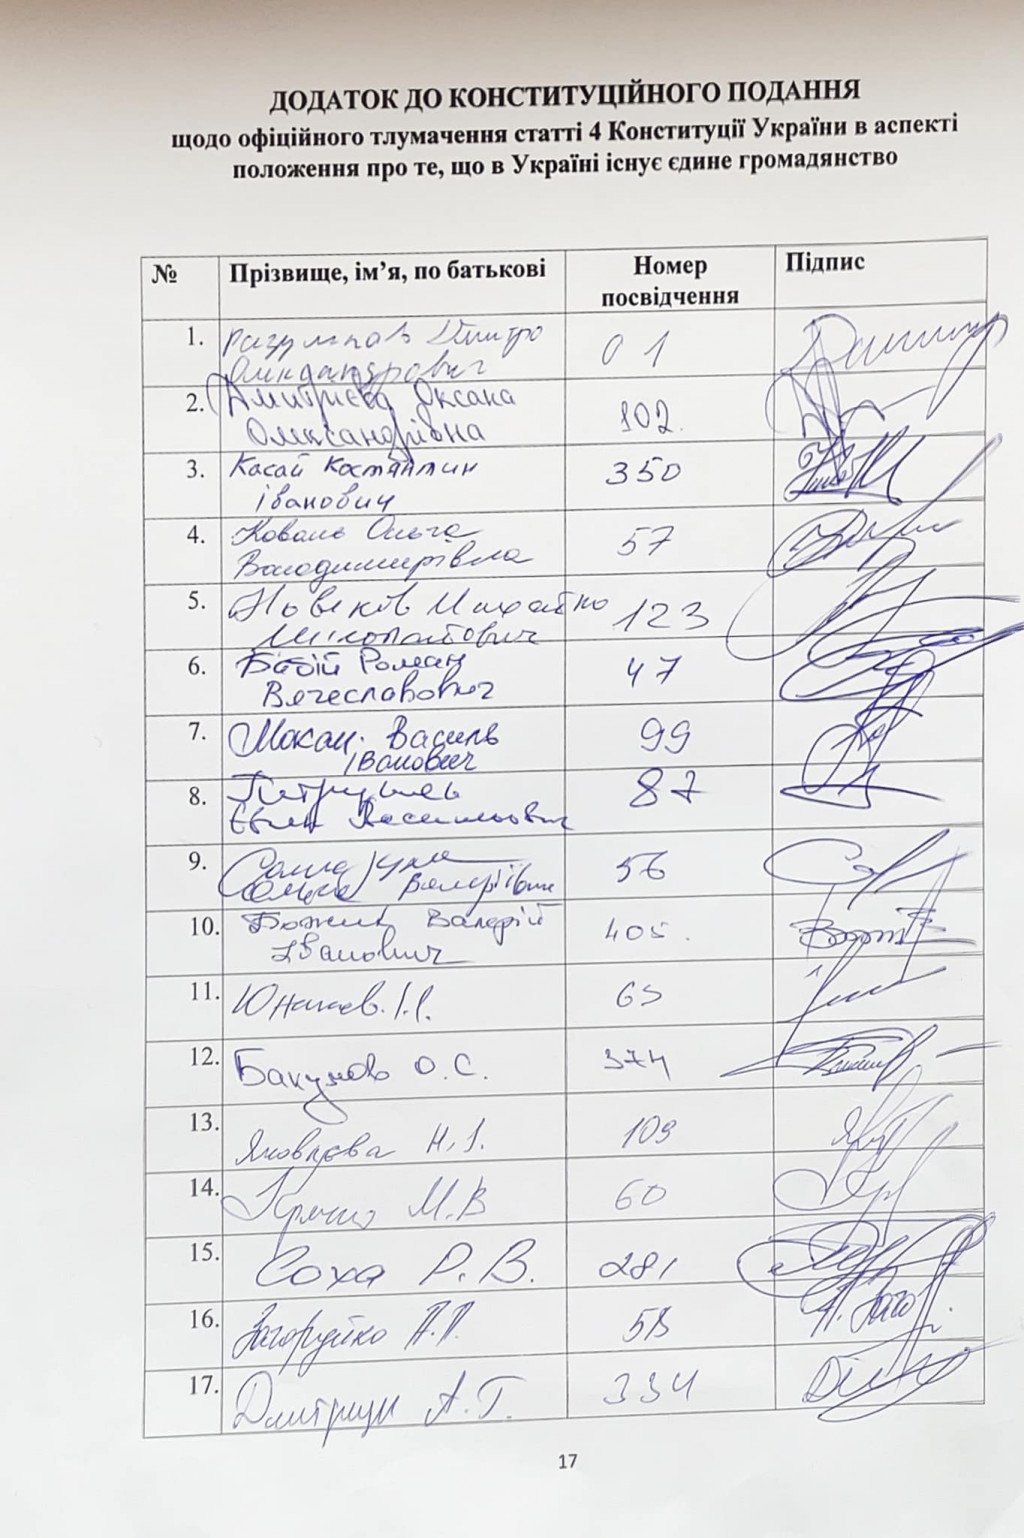 Множественное гражданство: 99 нардепов хотят узнать, конституционно ли наряду с украинским иметь паспорта других государств